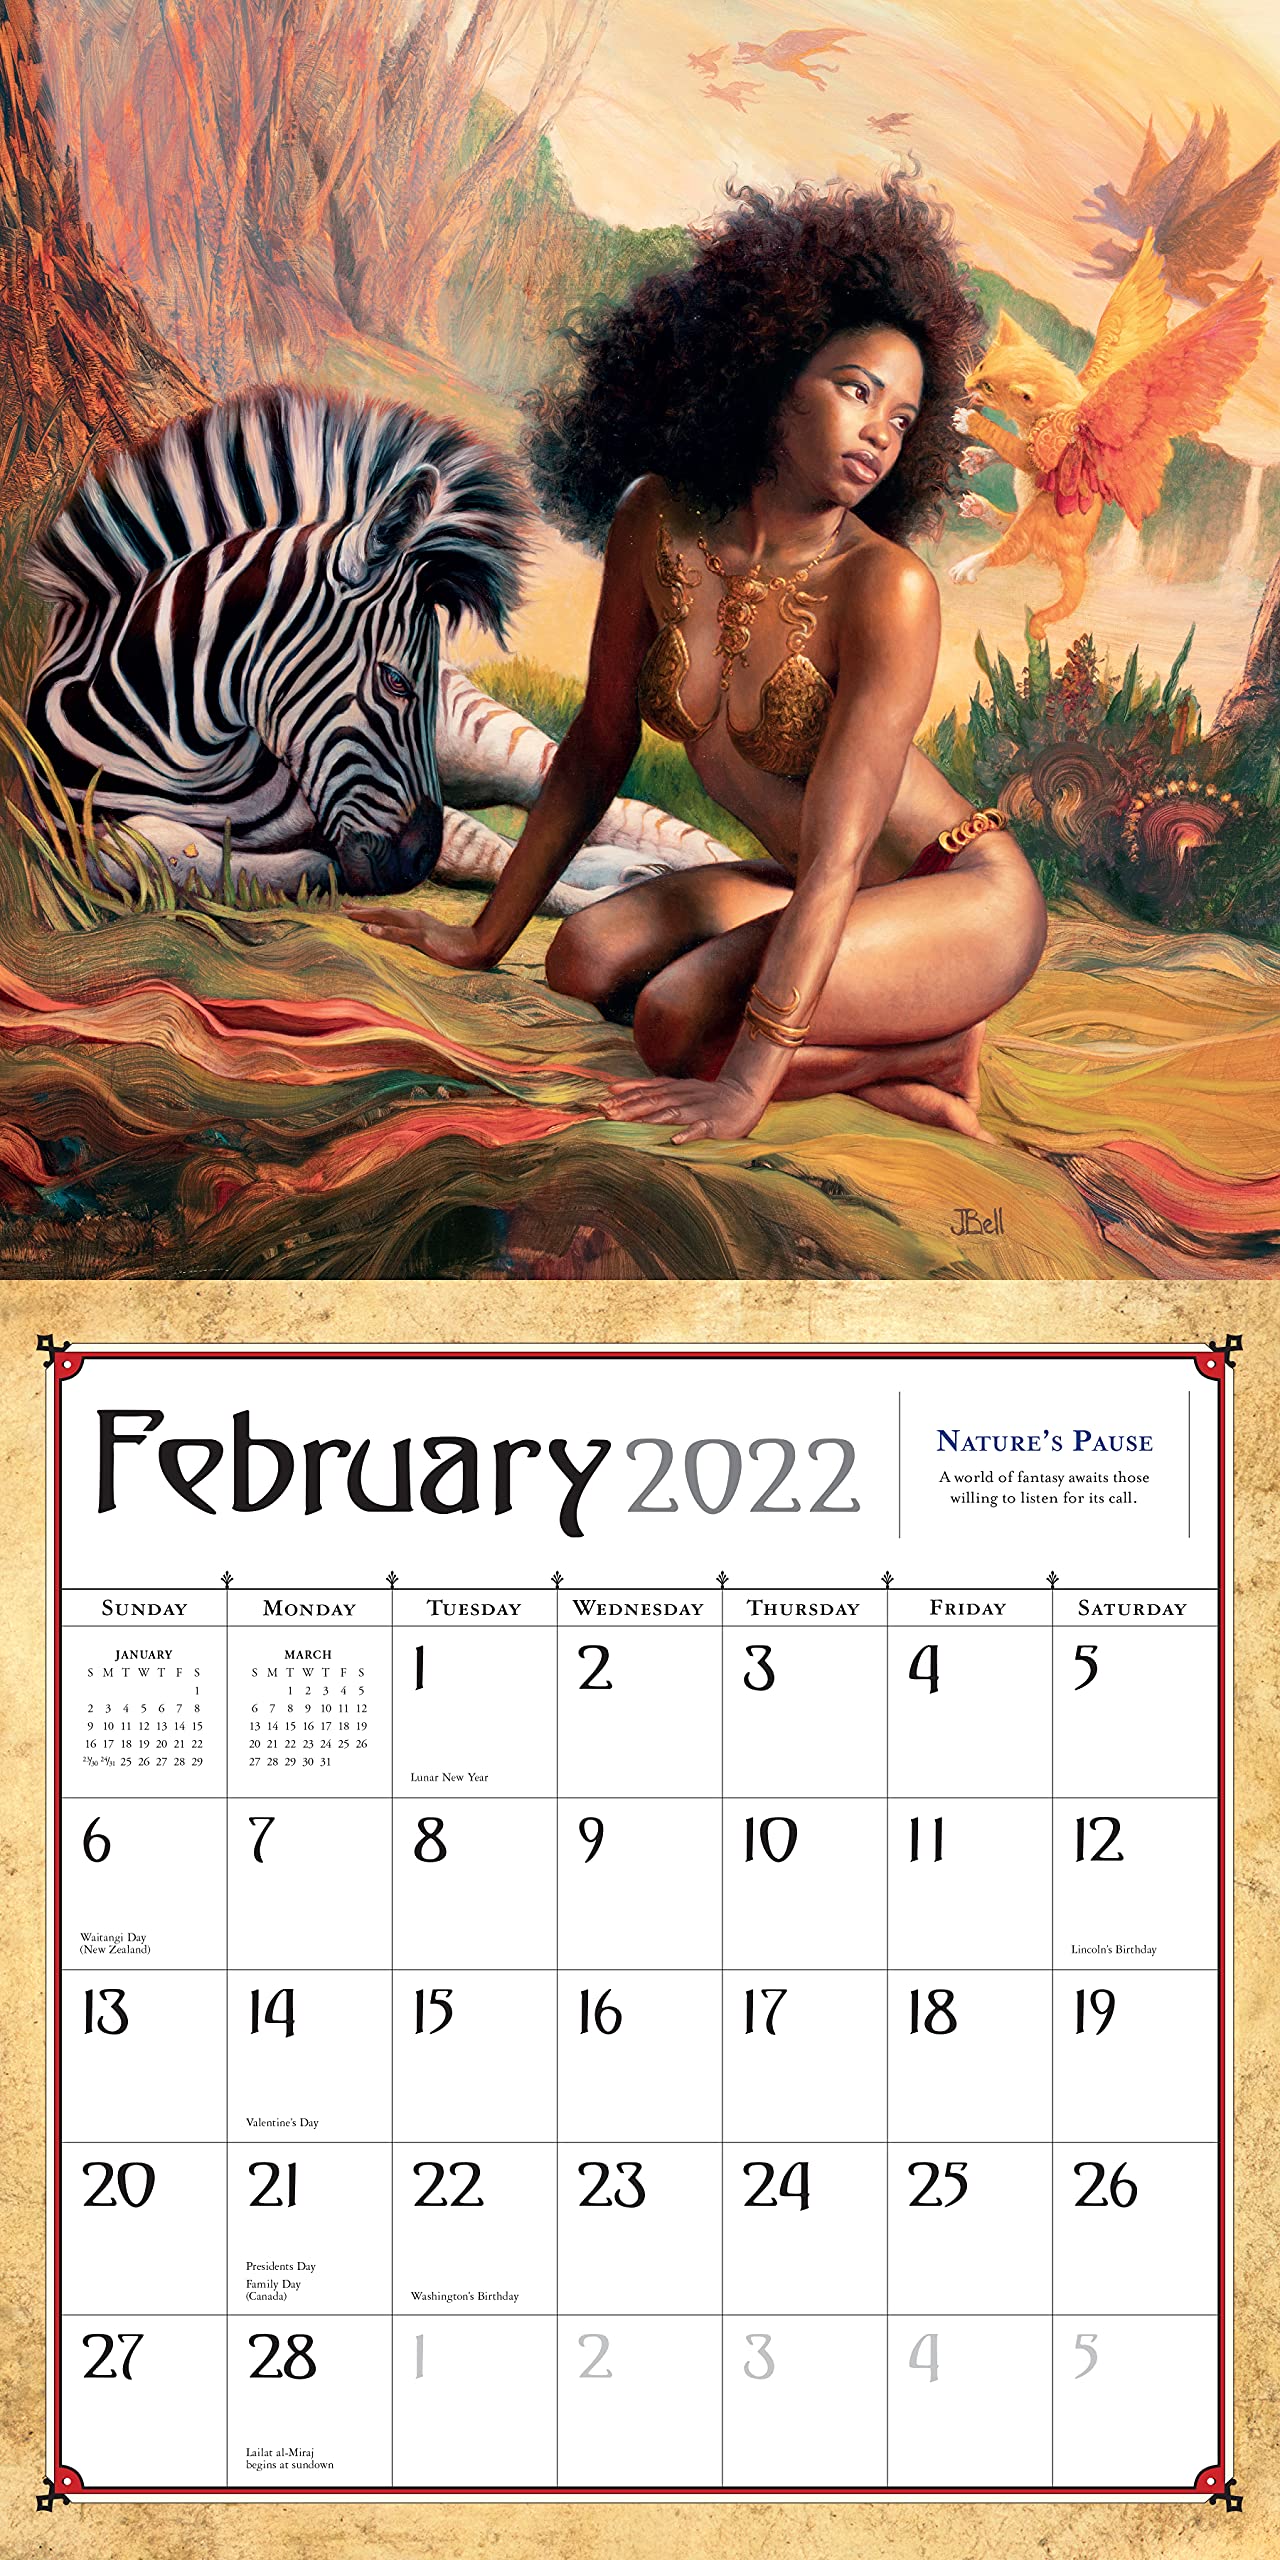 Boris Vallejo & Julie Bell's Fantasy Wall Calendar 2022